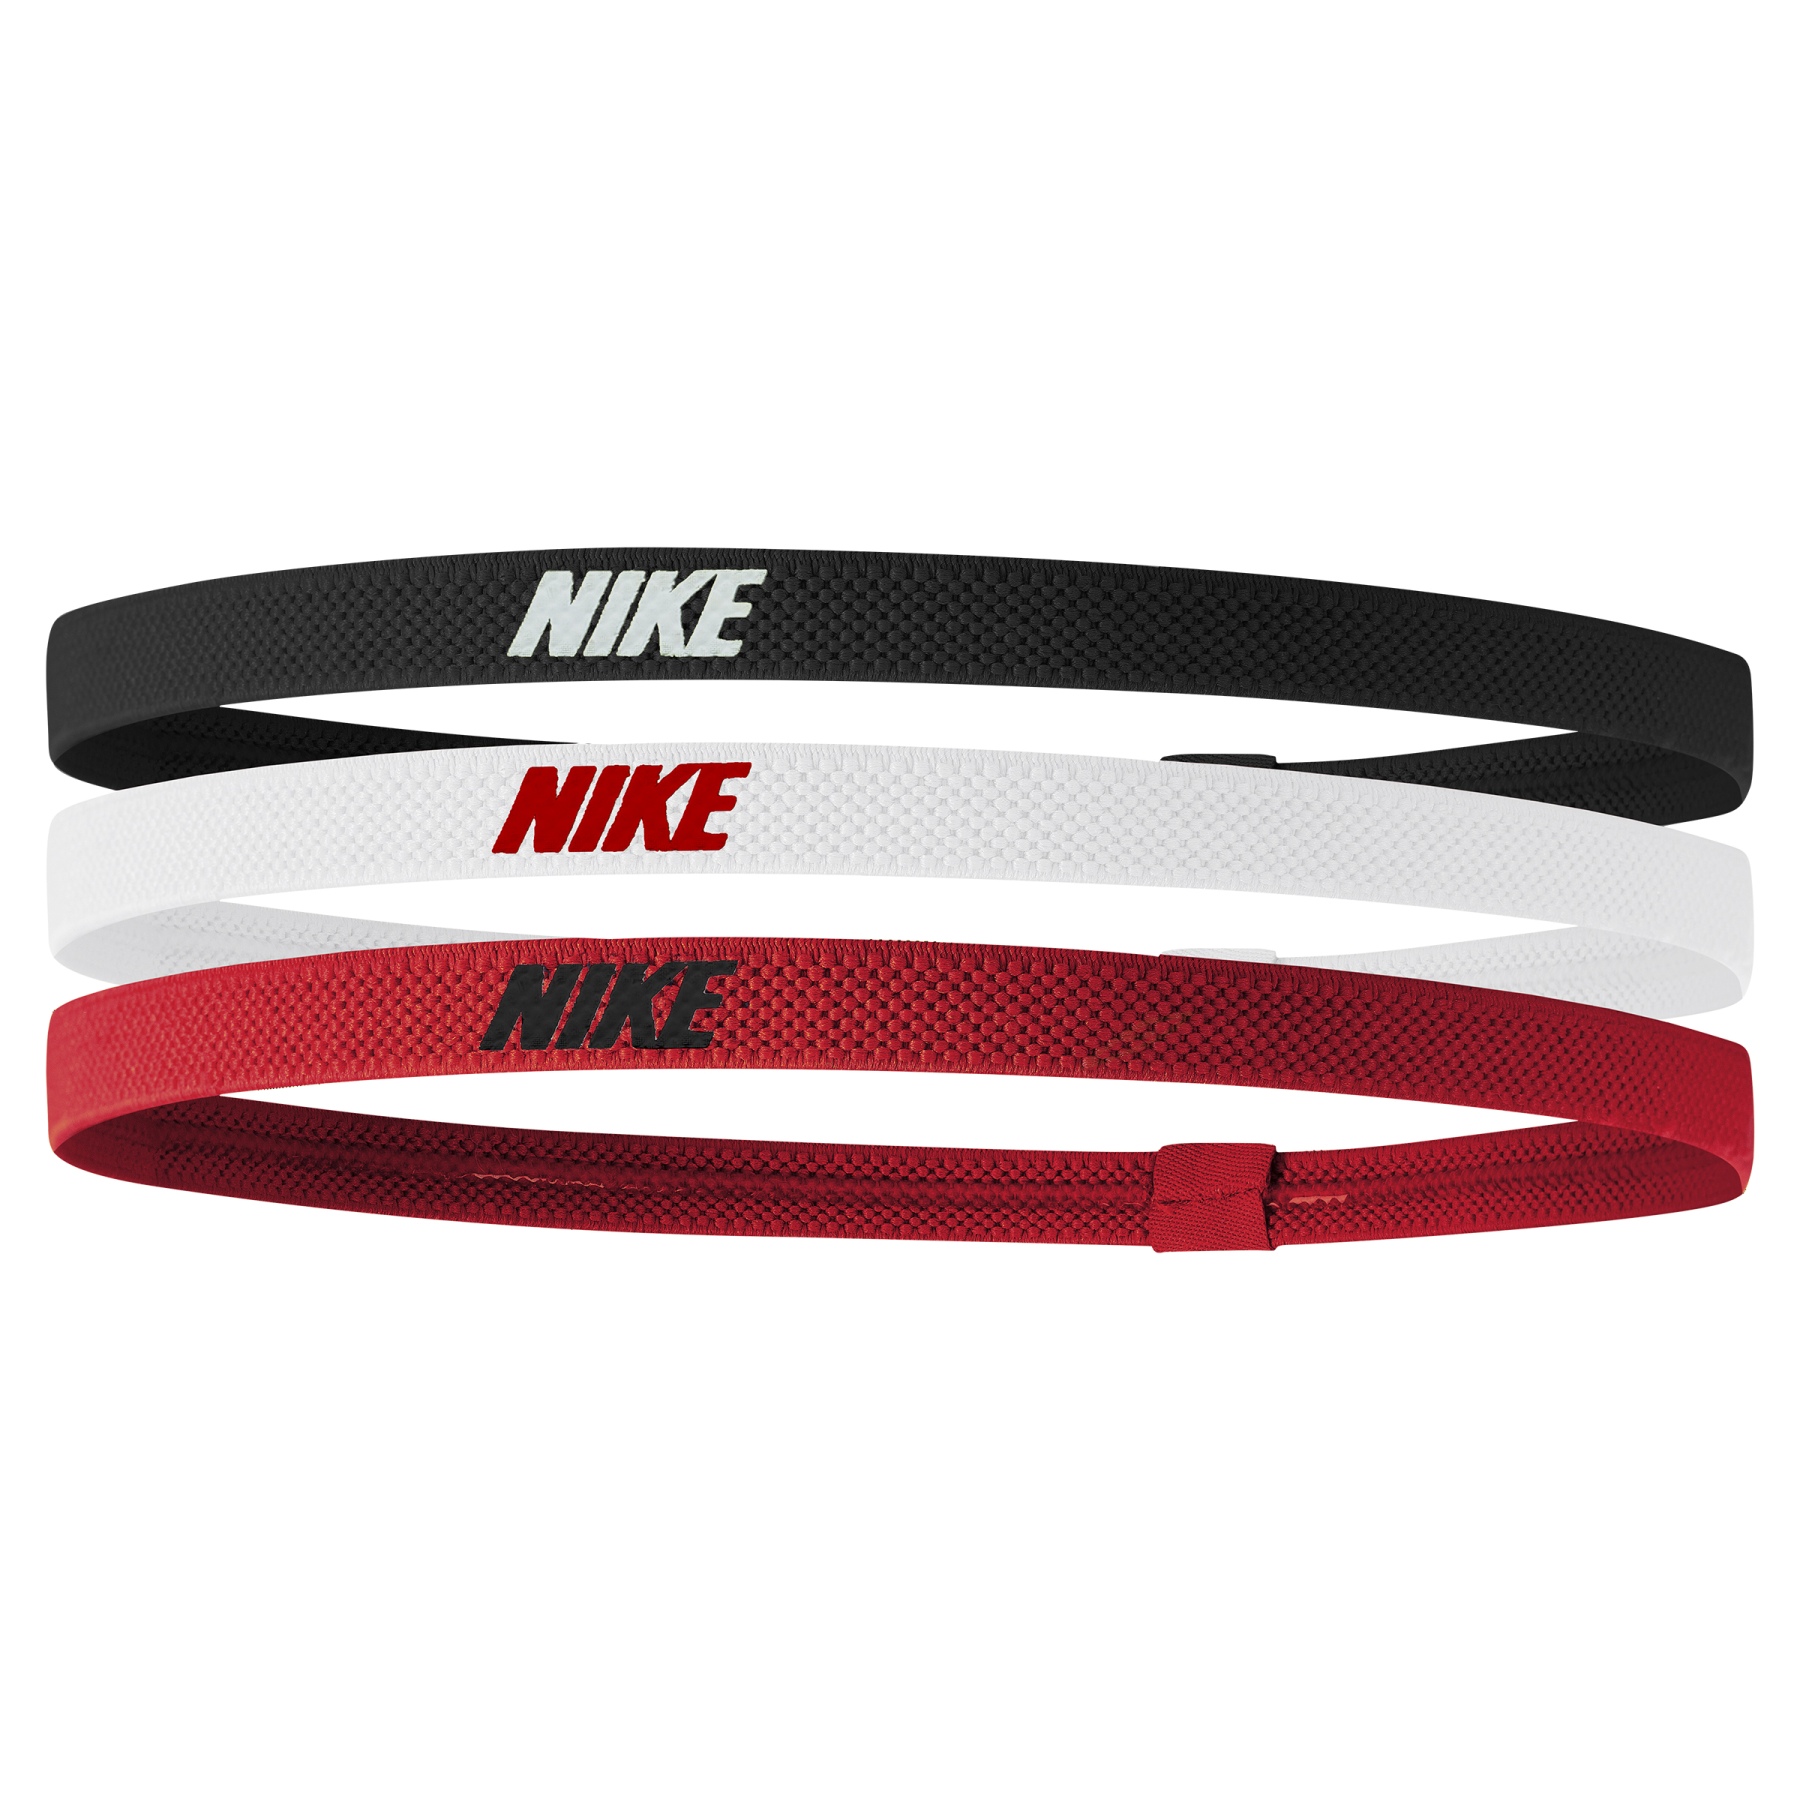 Productfoto van Nike Elastic Hoofdbanden 2.0 (Set van 3) - black/white/university red 083